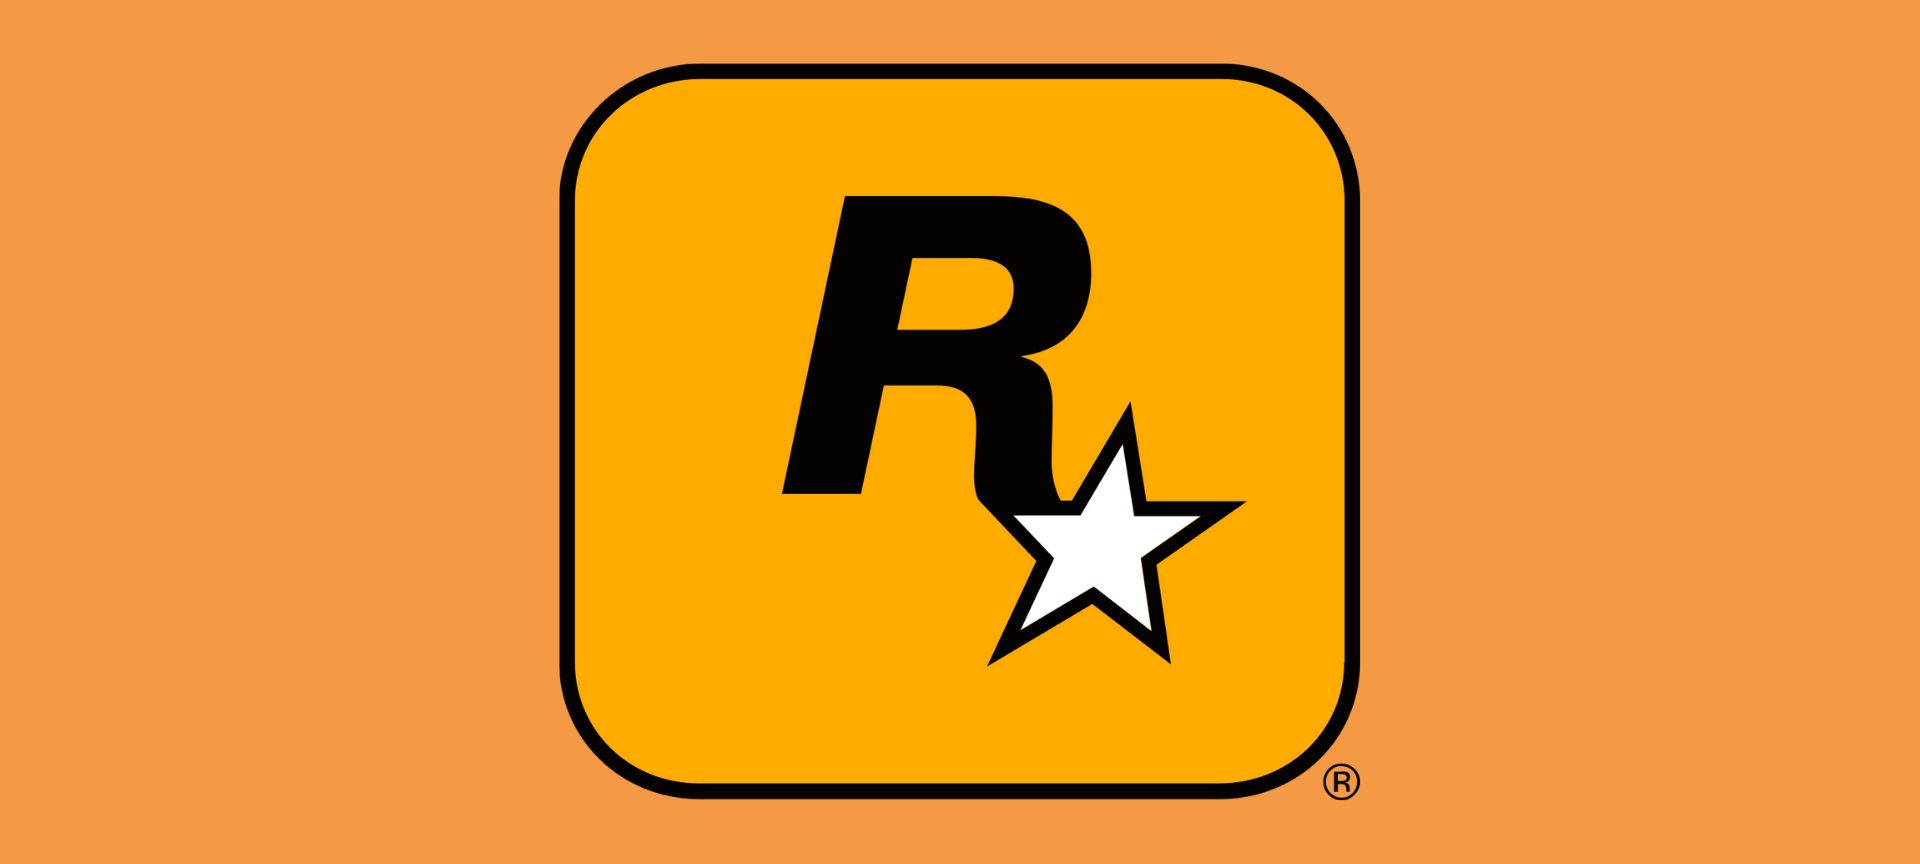 Rockstar games logo